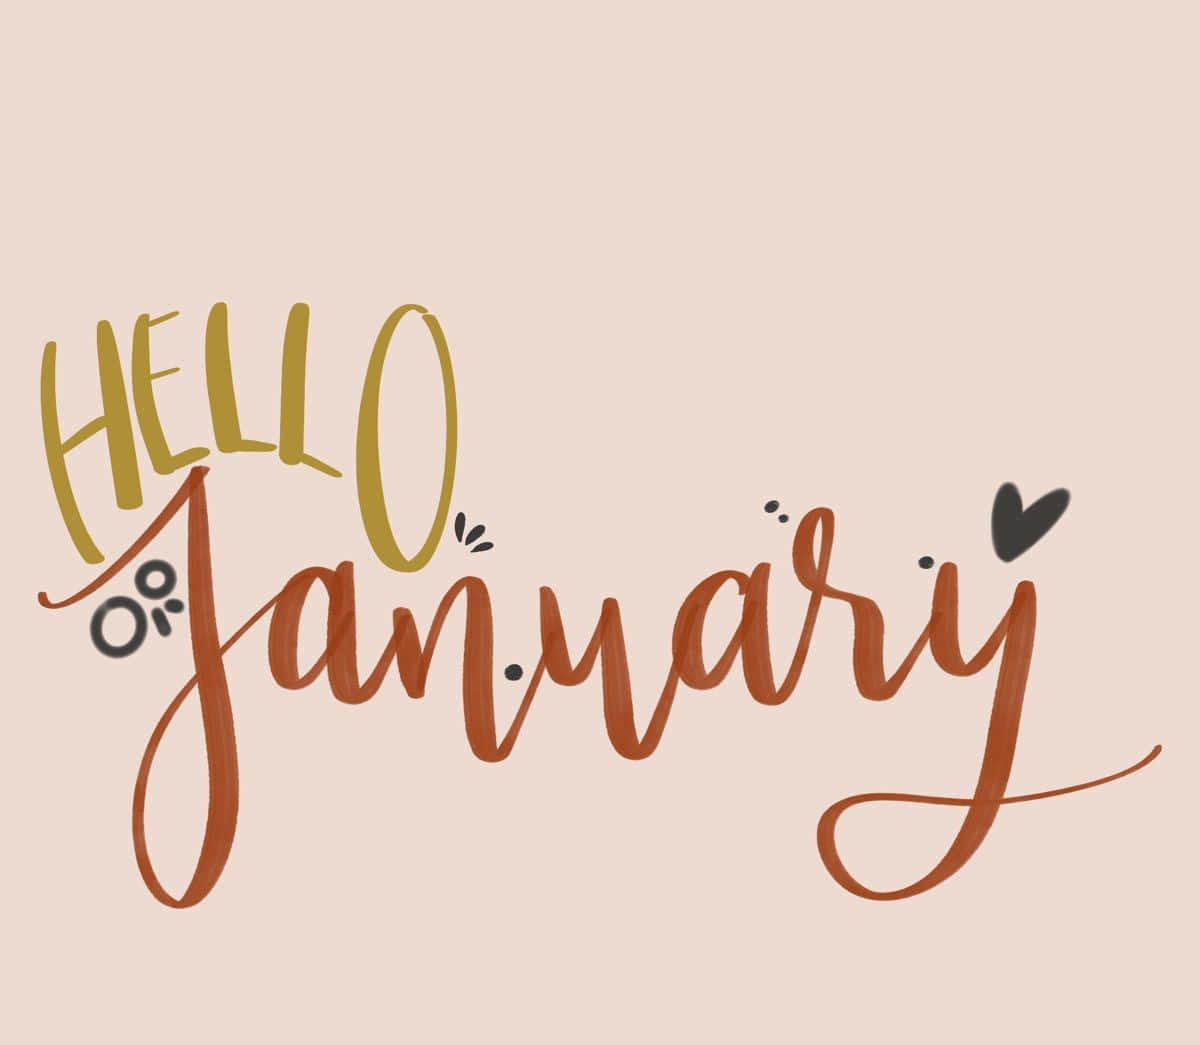 Börjanav Ett Nytt År - Välkommen Januari